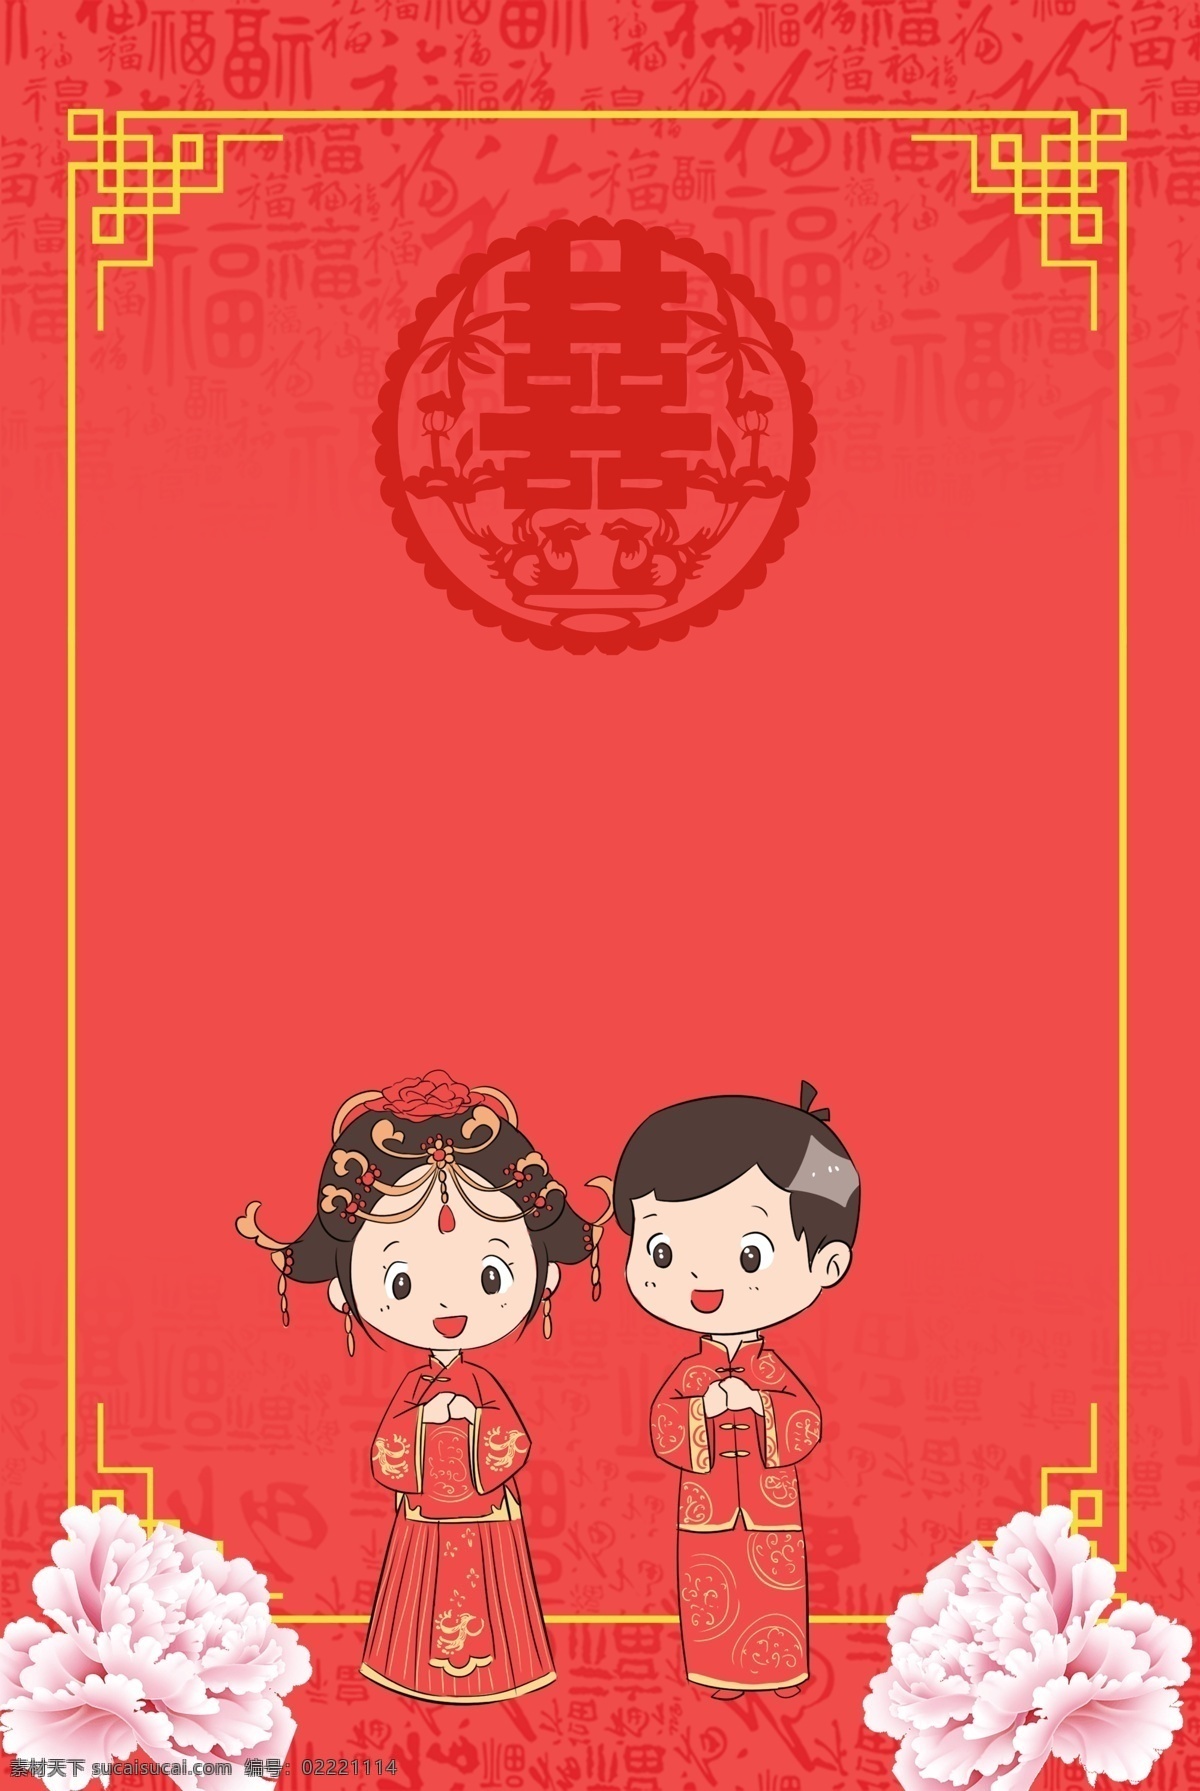 中国 古典 风格 牡丹 福字 红色 婚礼 邀请函 背景 古典风格 邀请函背景 婚礼请柬 婚庆邀请函 结婚